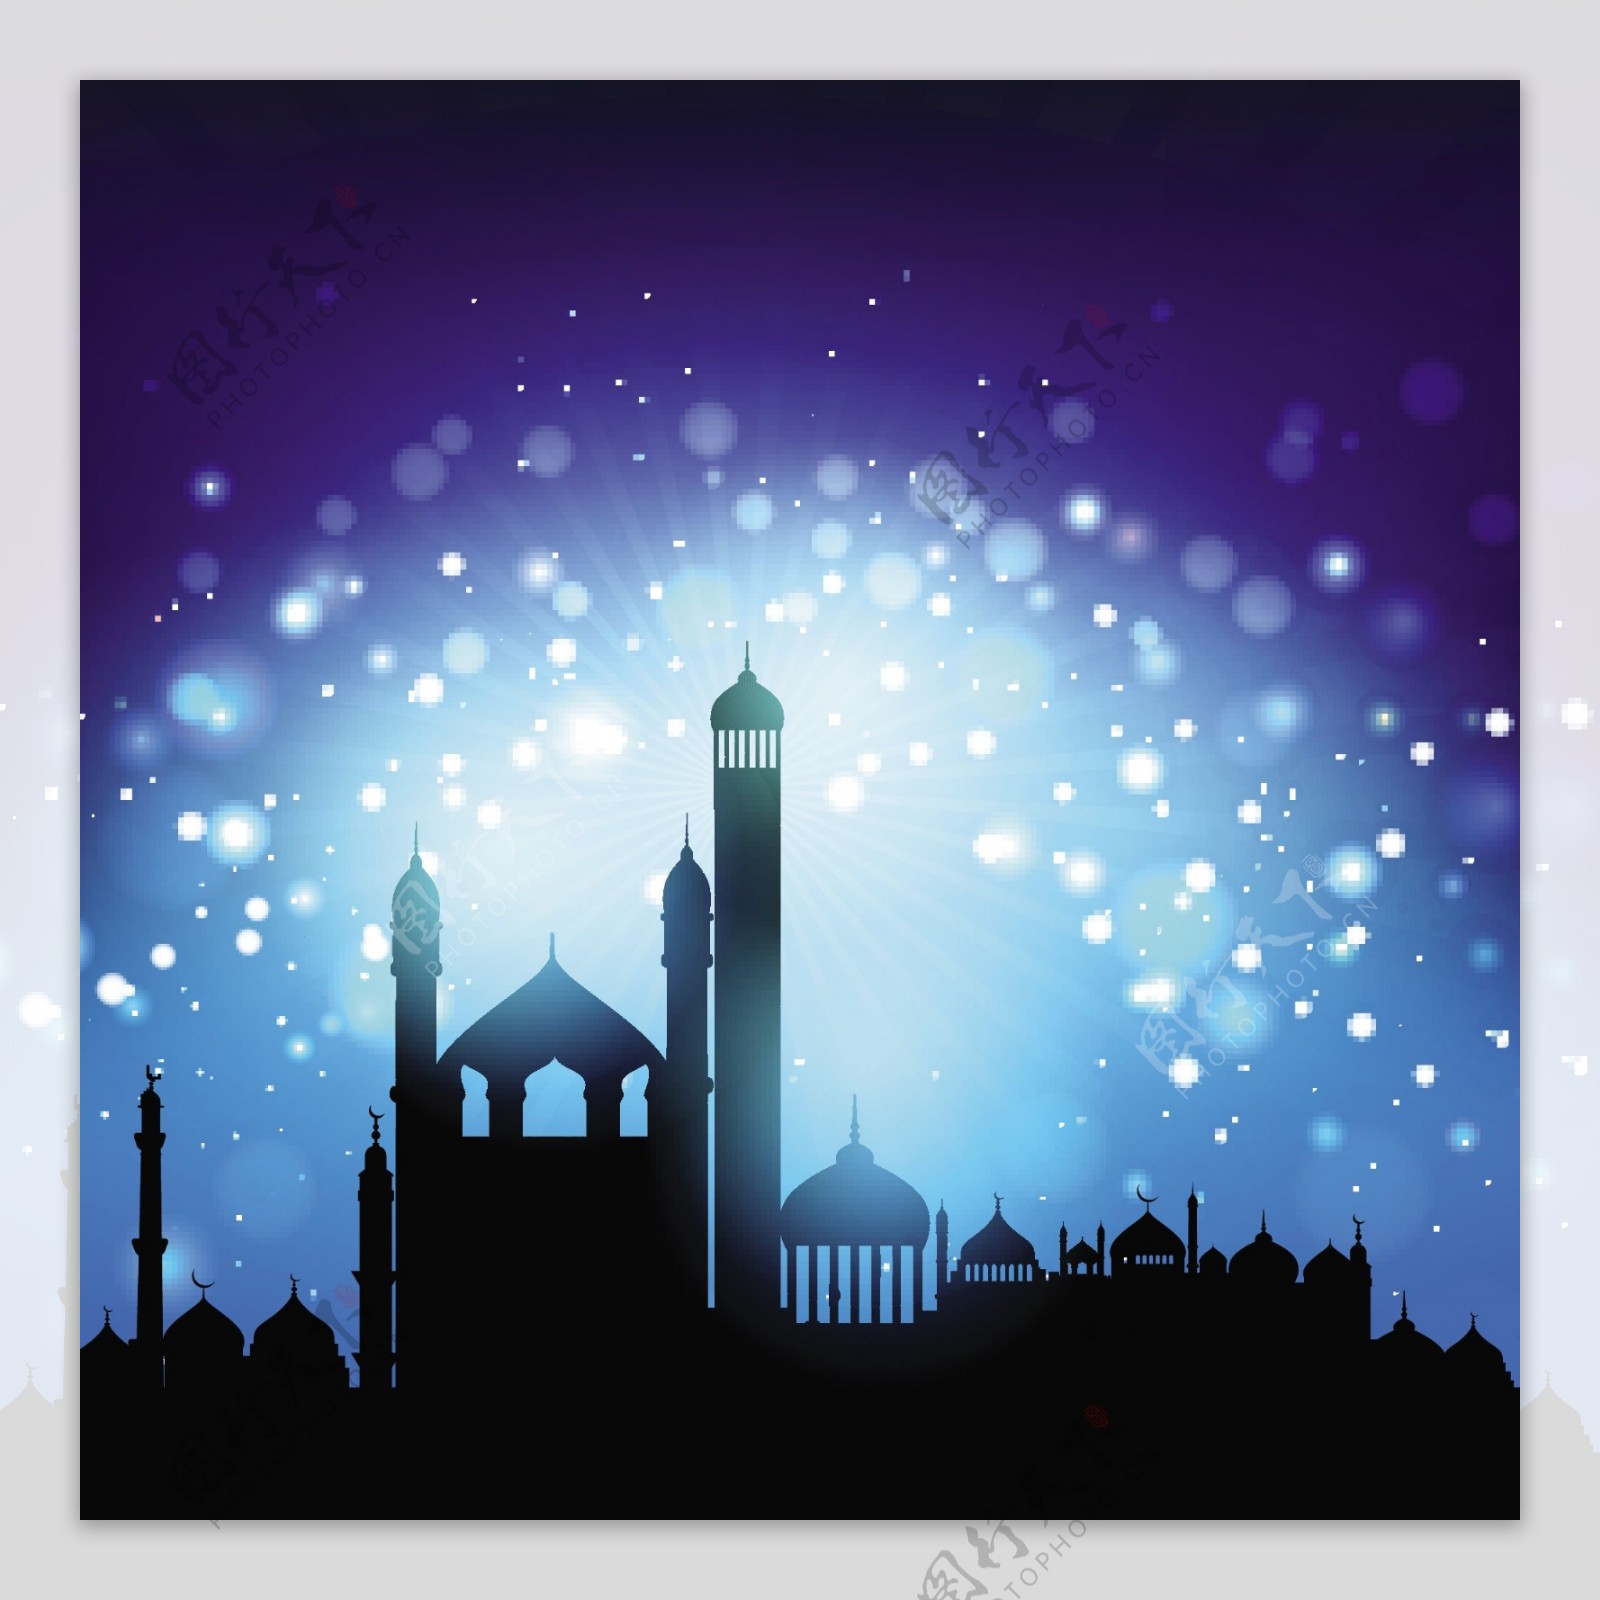 对背景虚化的夜空清真寺的剪影